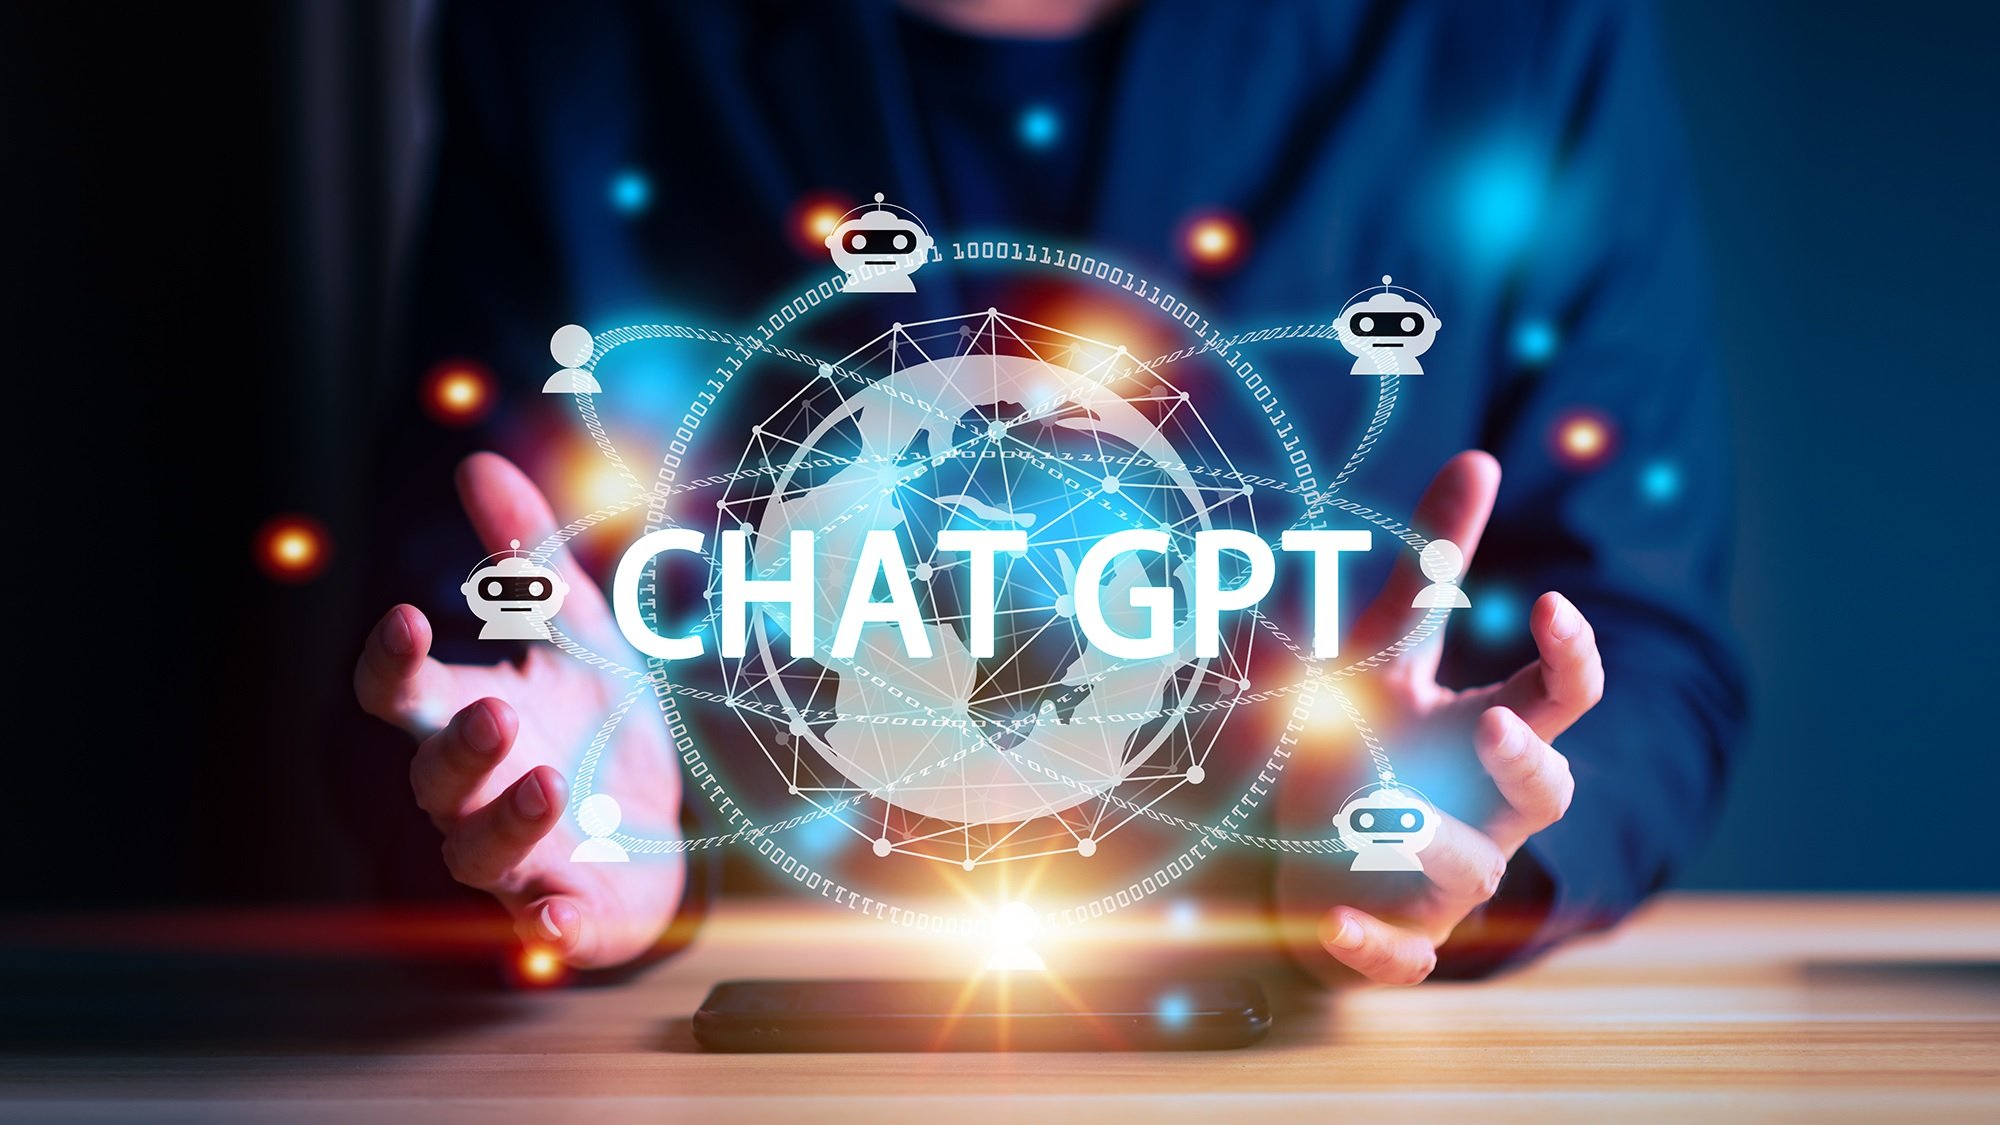 چت جی‌پی‌تی ChatGPT ظاهراً می‌تواند با هزینه حدود 1 دالر و در کمتر از 7 دقیقه سافتویر توسعه دهد